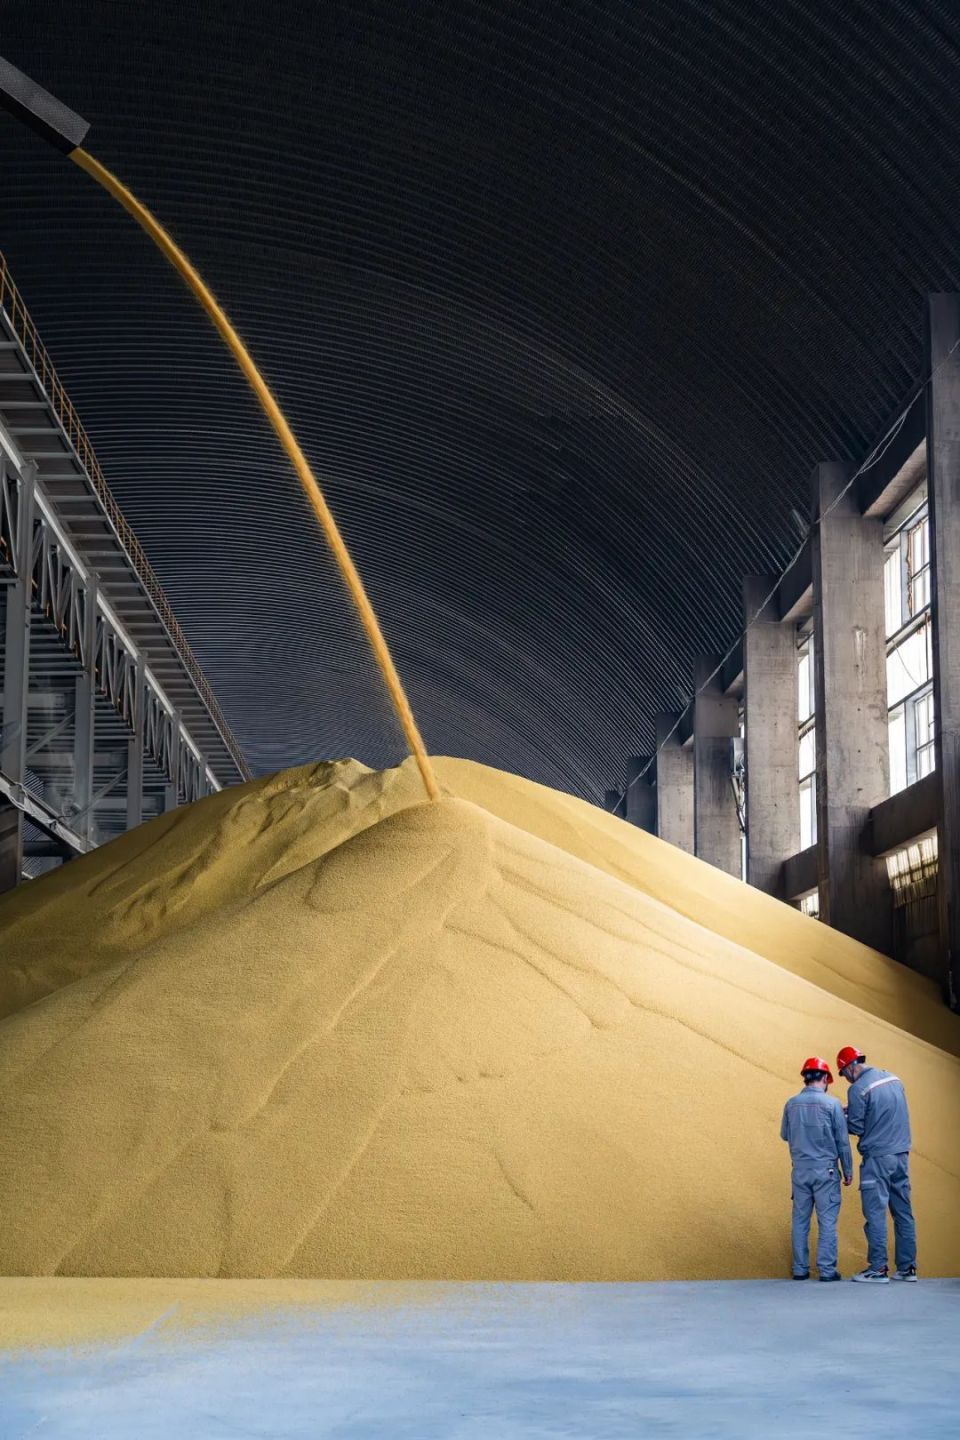 贵州磷矿所生产的高品质磷肥但磷化工初级产品,每吨产值不过几千元